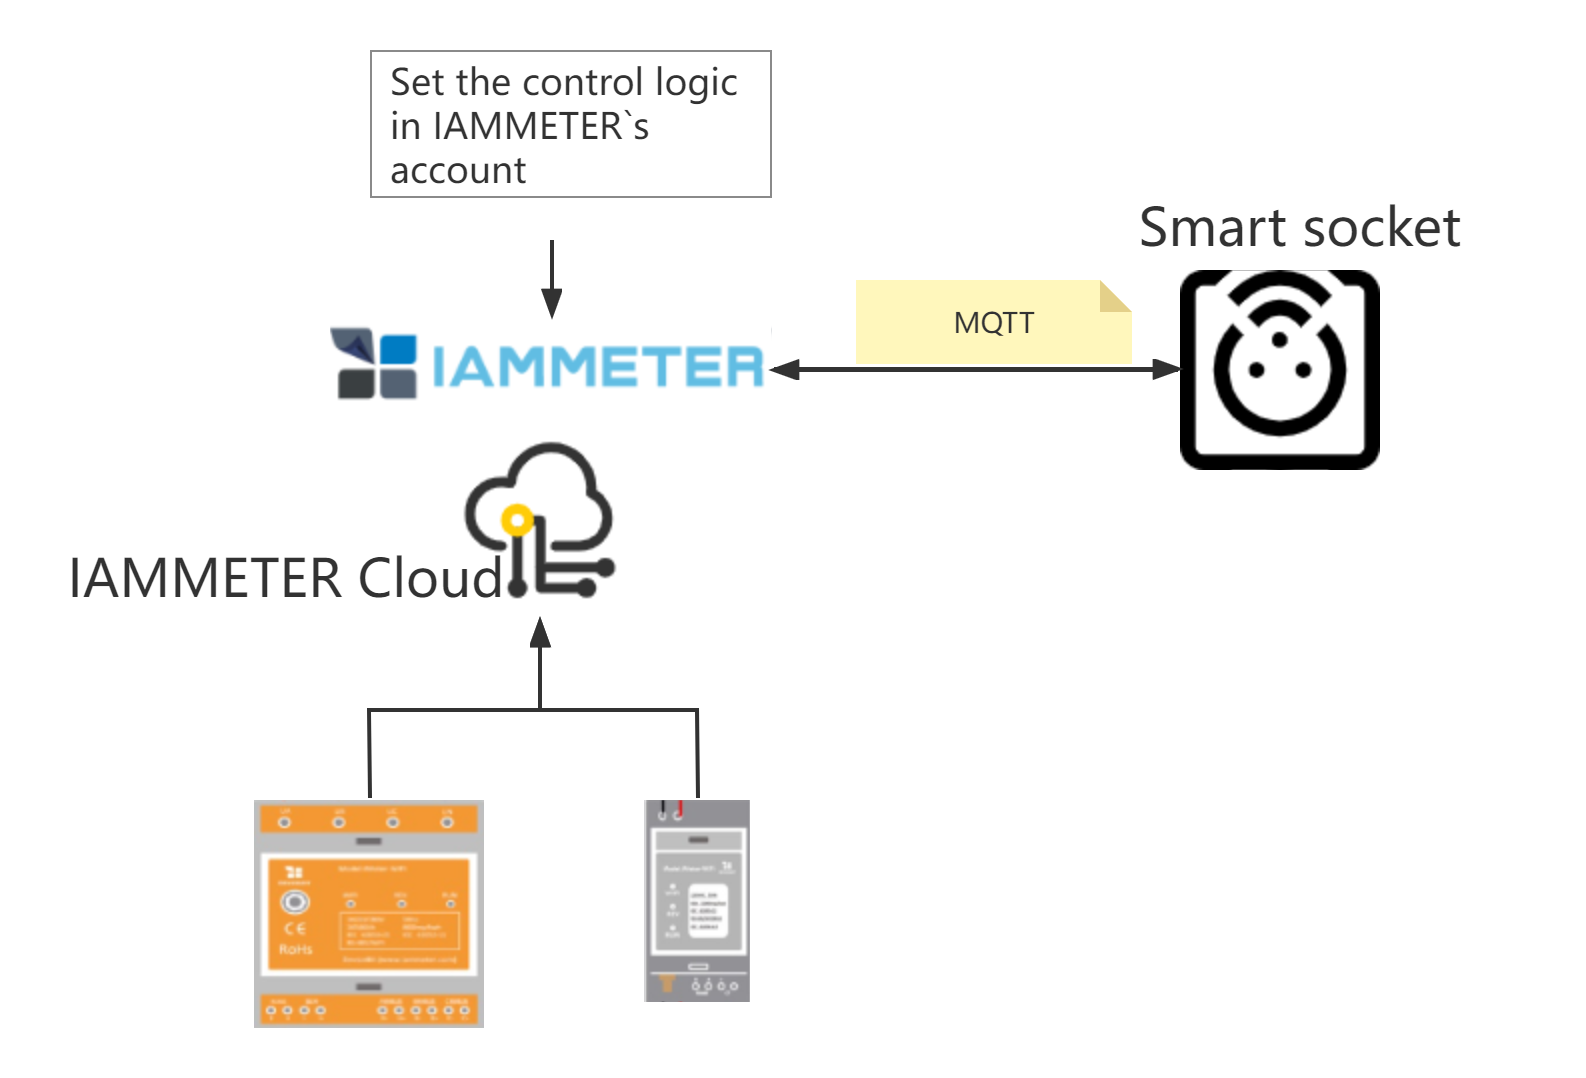 bedien de mqtt smart socket in IAMMETER cloud